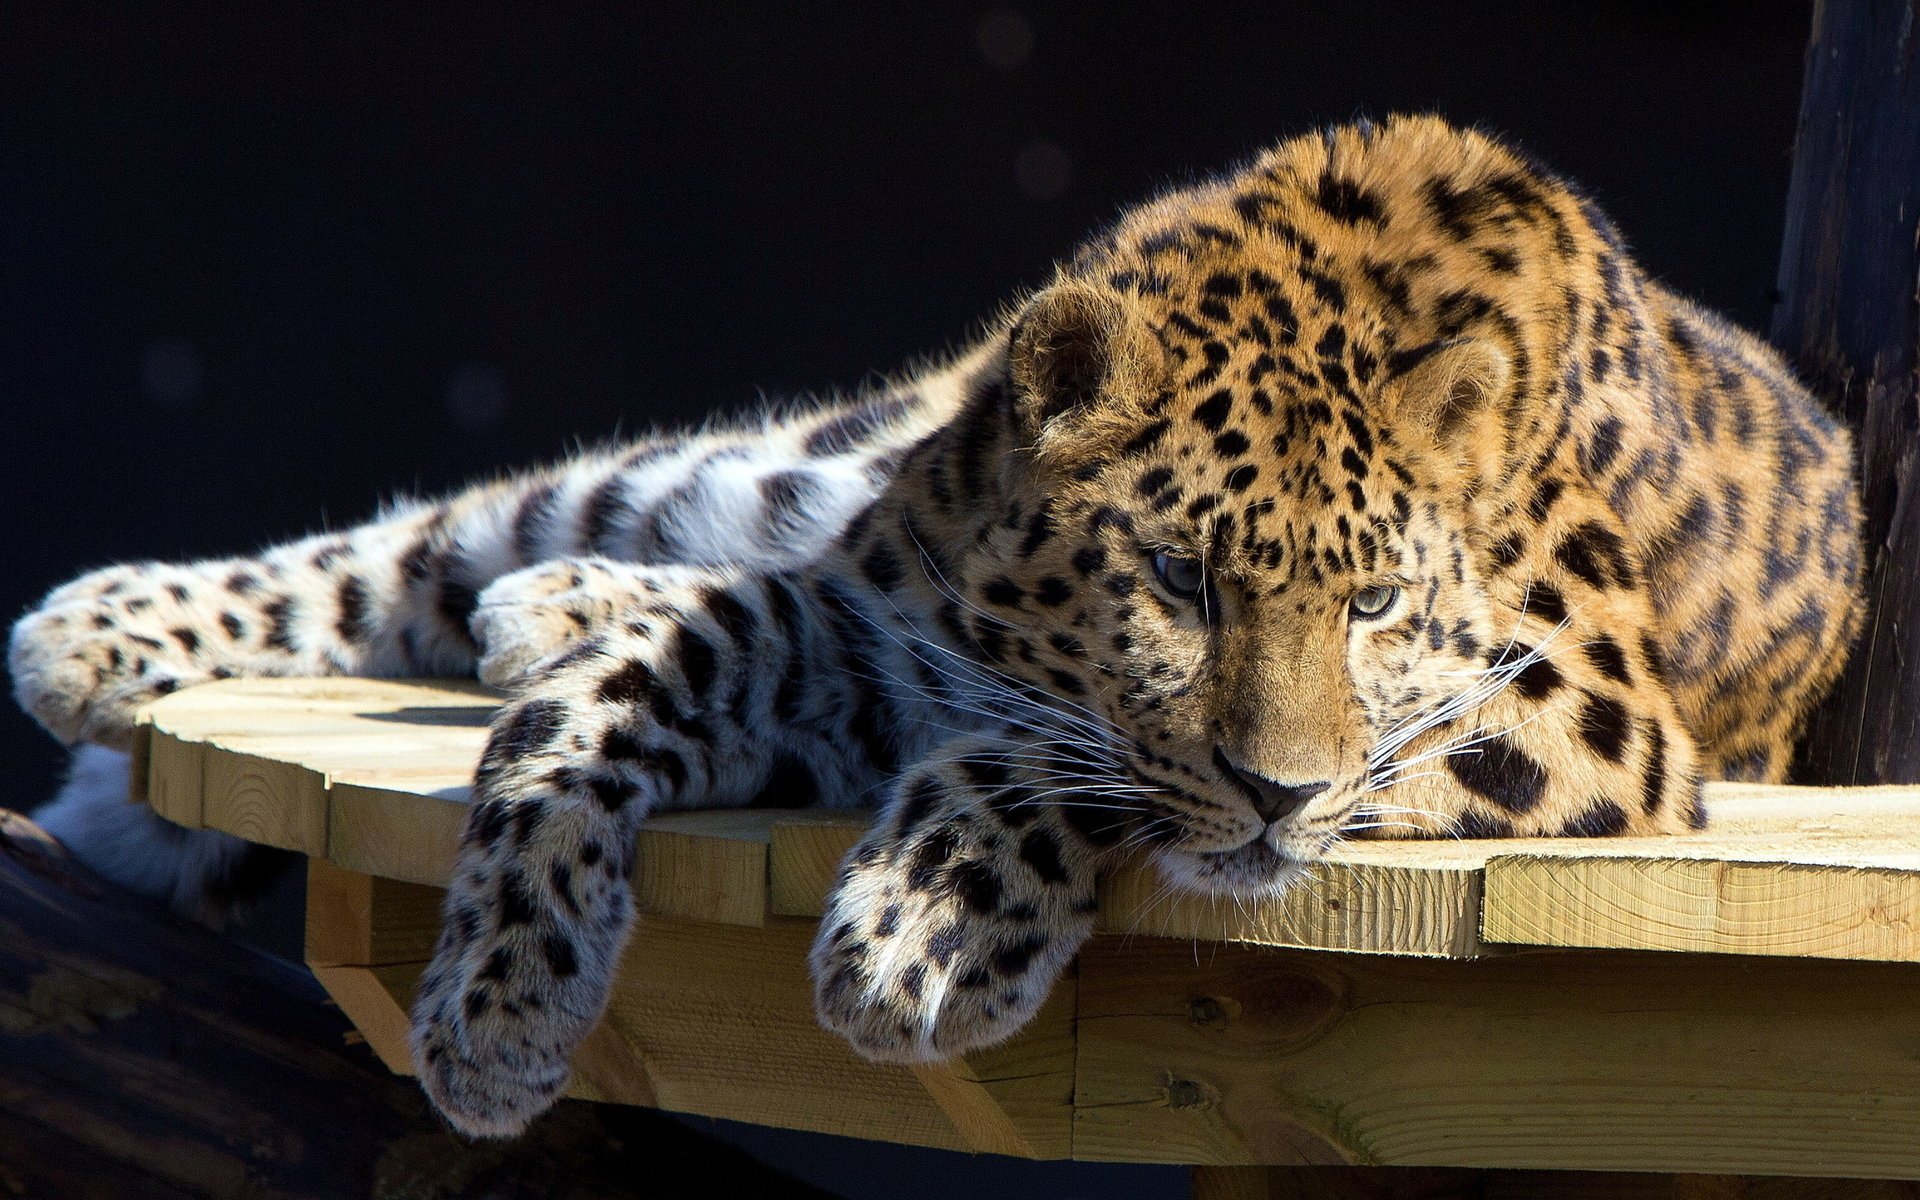 Пятнистый красавец леопард отдыхает на столе и смотрит заинтересовано вниз